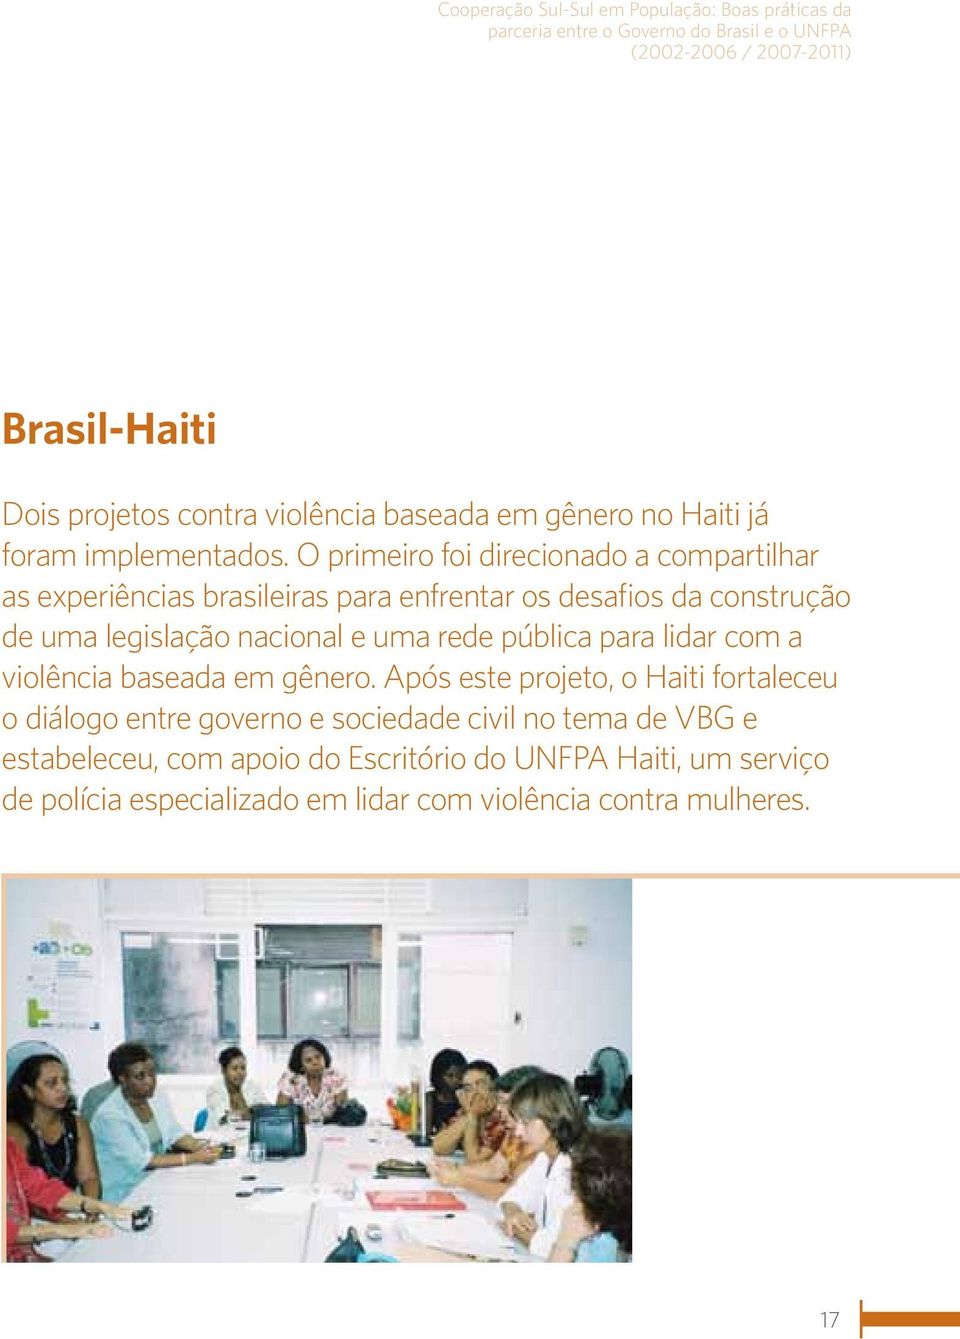 O primeiro foi direcionado a compartilhar as experiências brasileiras para enfrentar os desafios da construção de uma legislação nacional e uma rede pública para